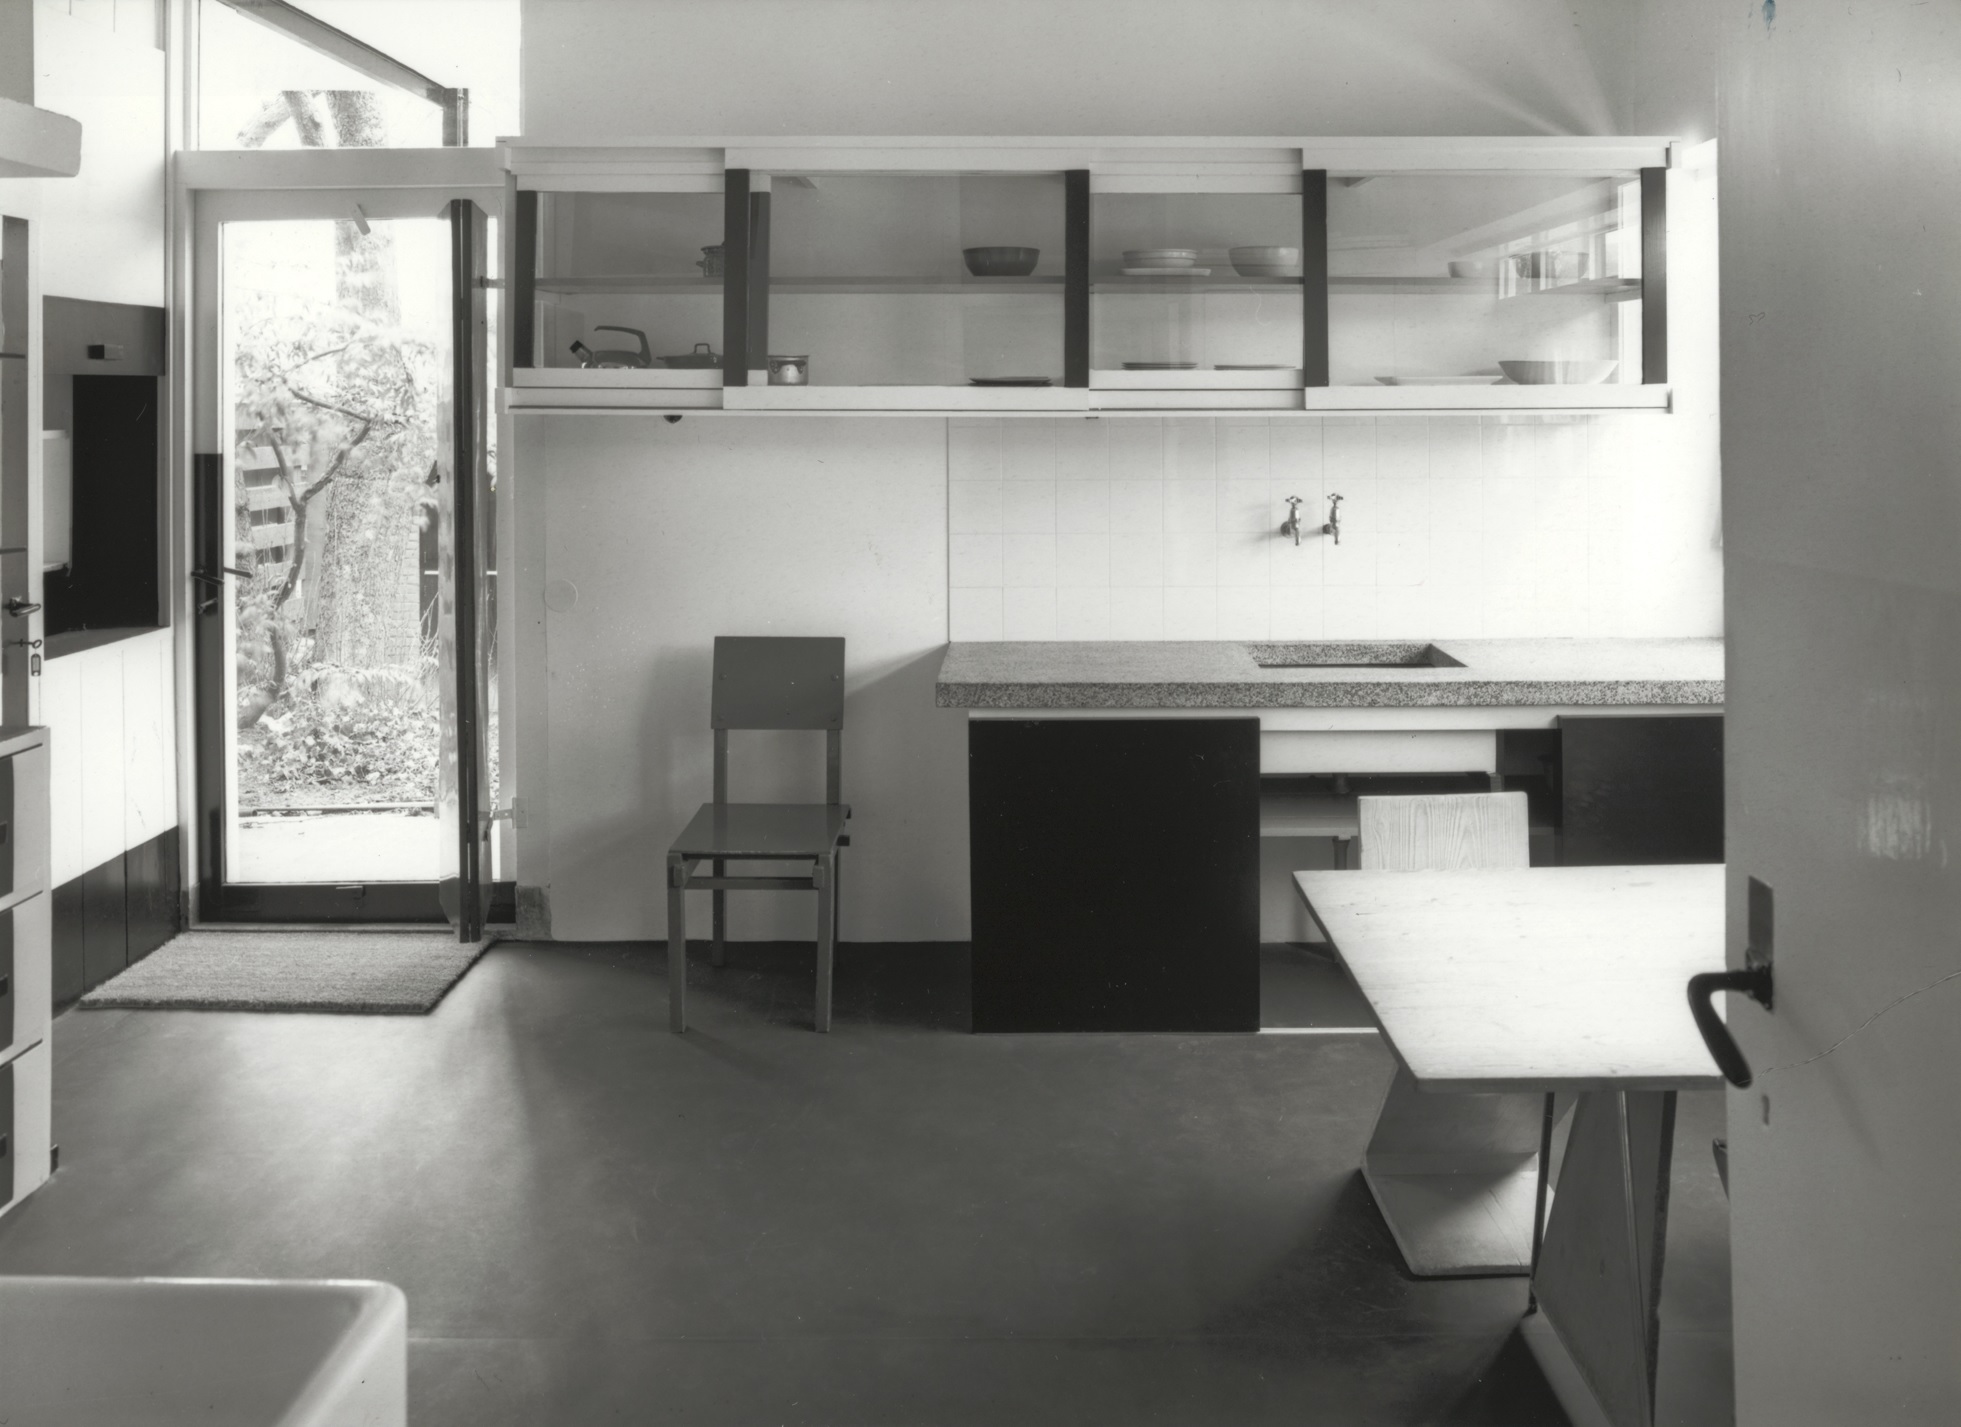 Rietveld Schröderhuis kitchen